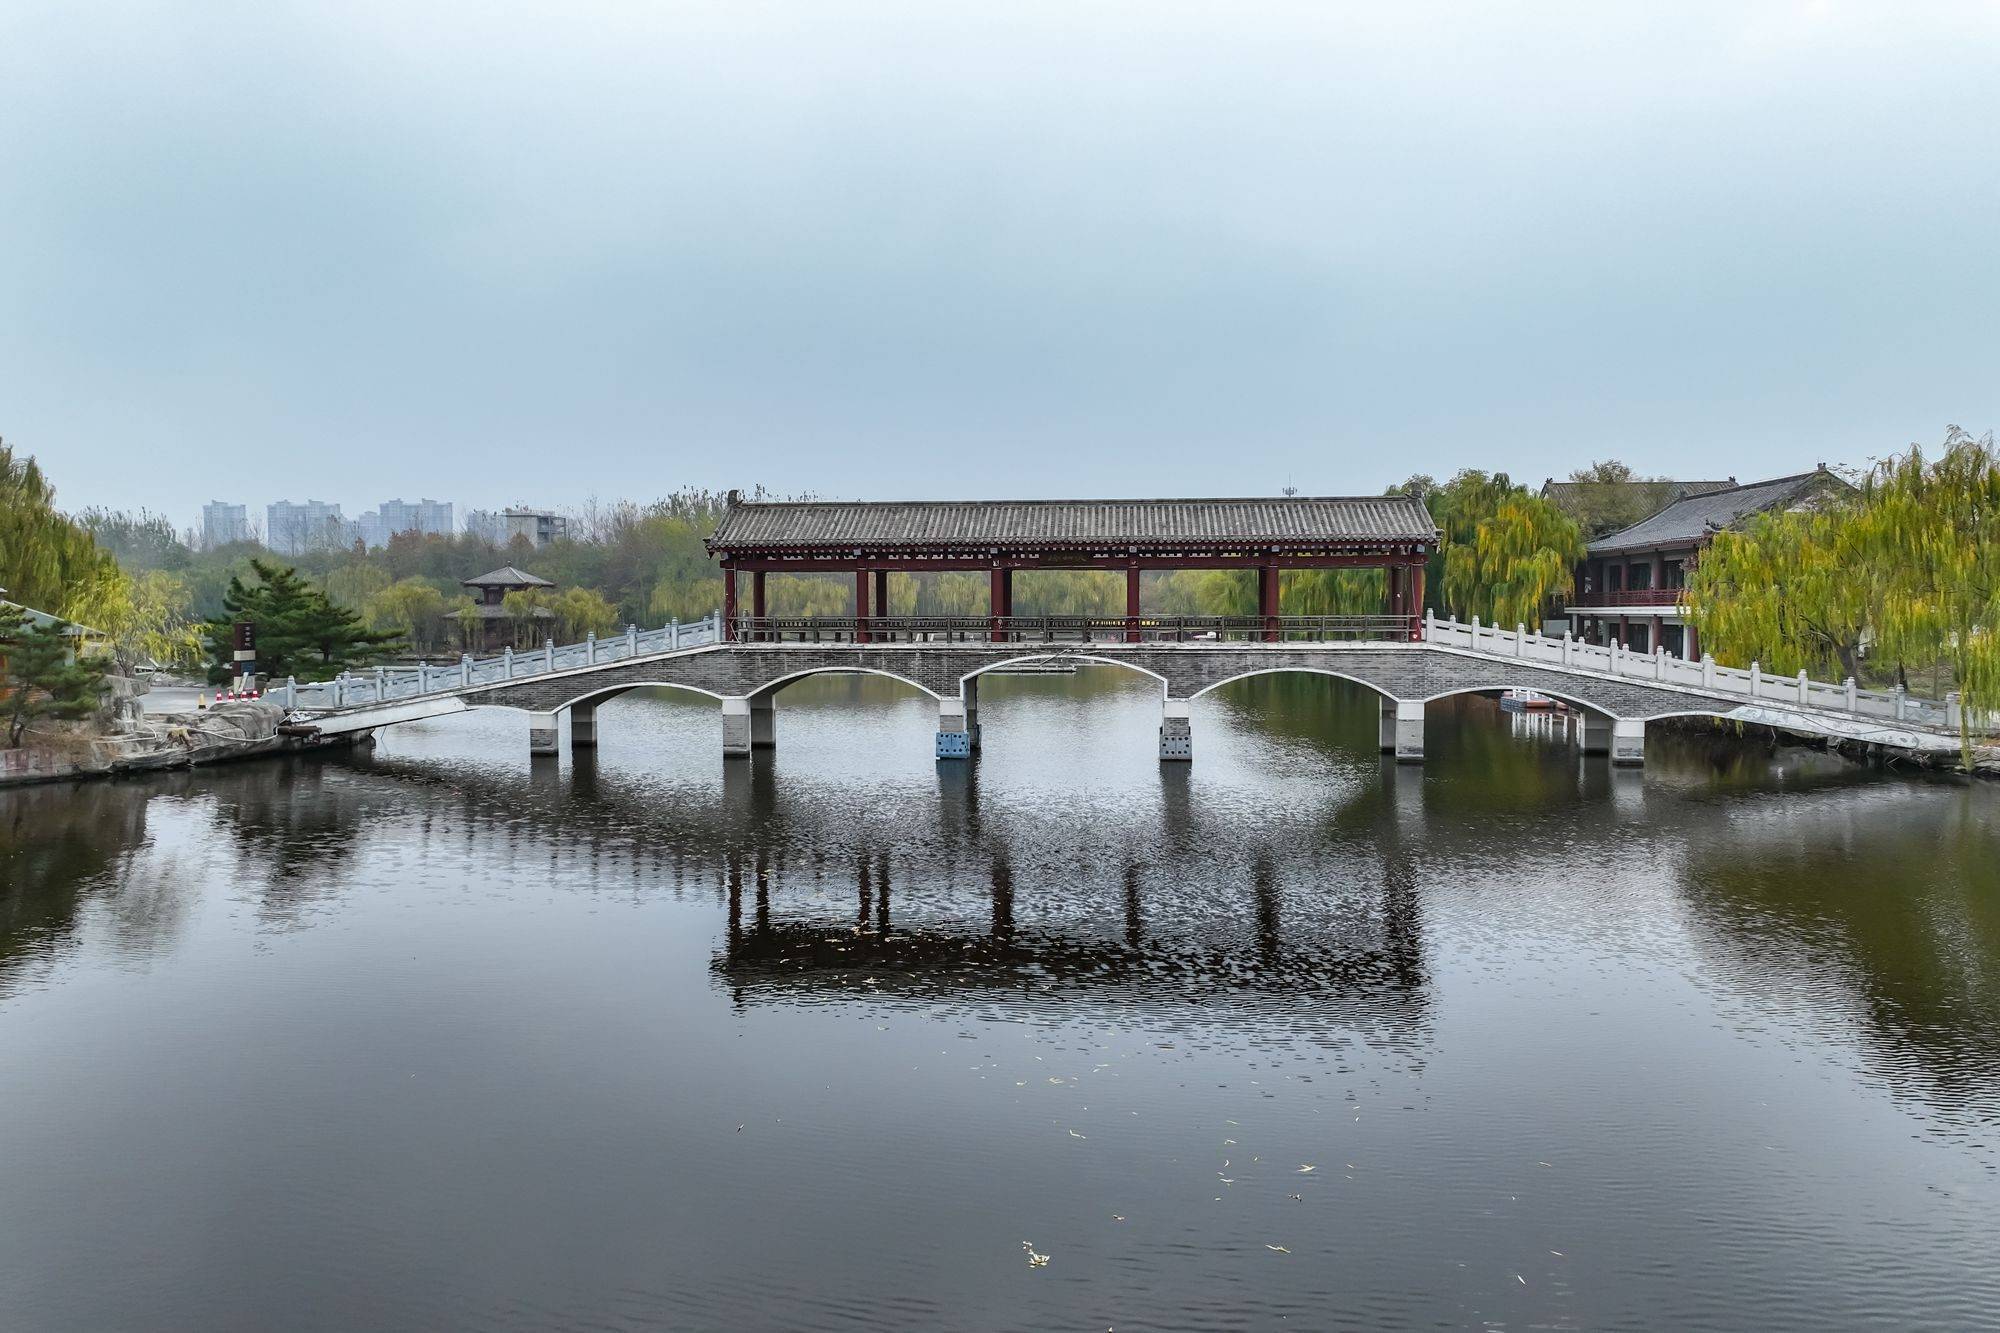 子园,历史文化气息浓郁,游客可以感受儒家文化的魅力